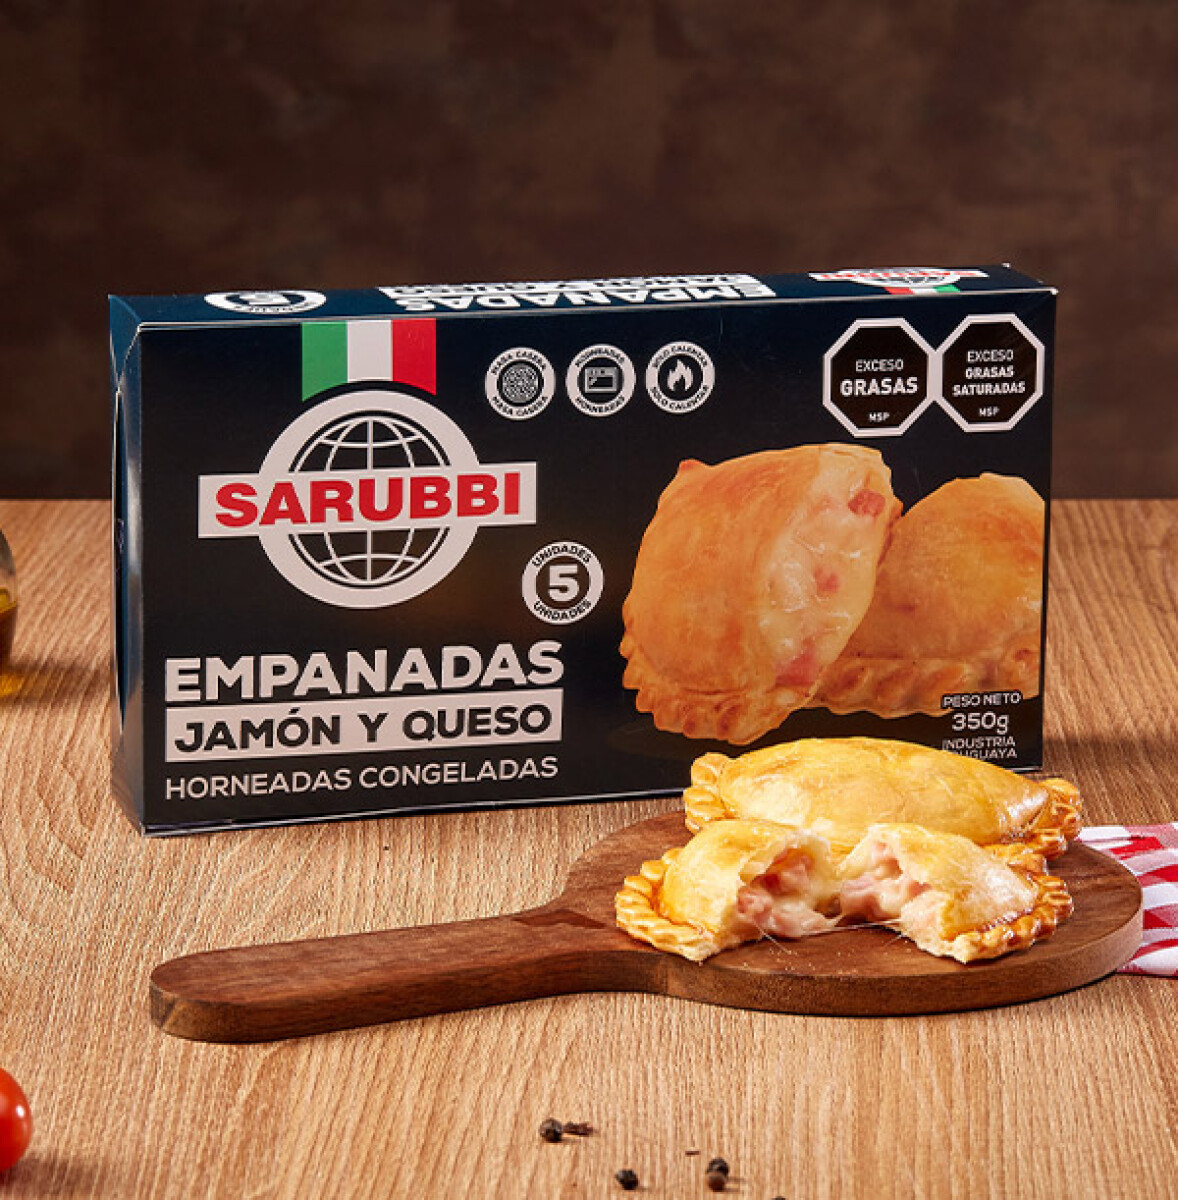 Empanadas jamón y queso Sarubbi - 5 uds. - 350 gr 